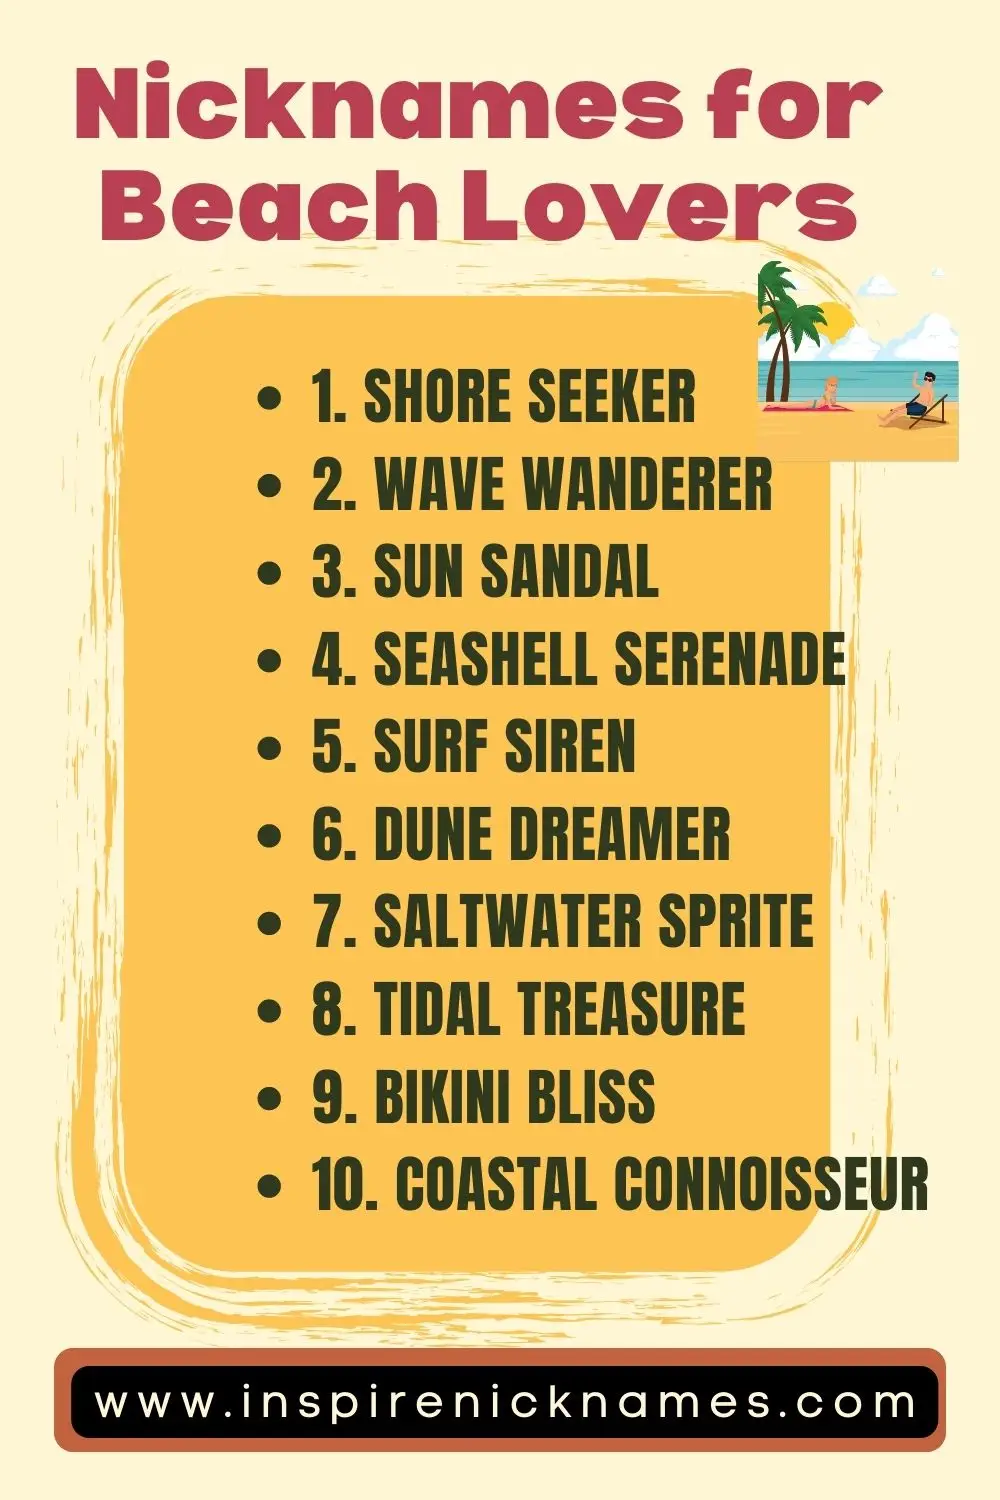 nicknames for beach lovers list ideas